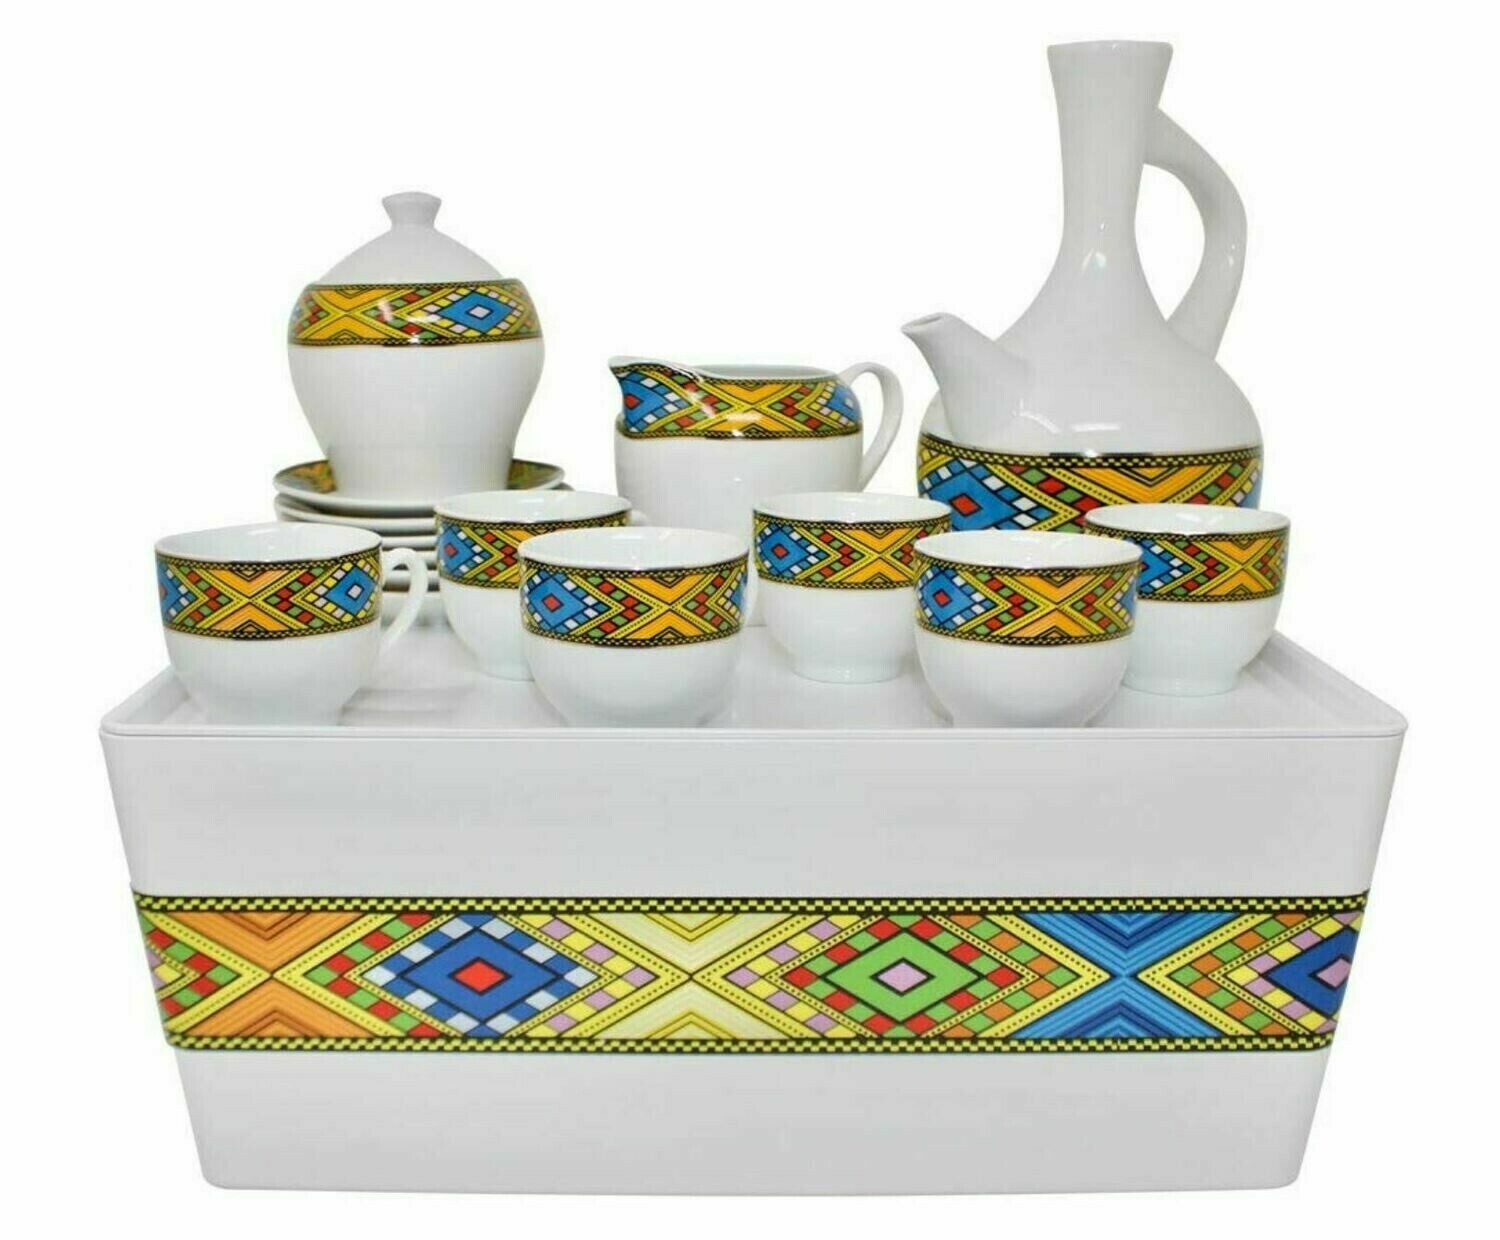 Ethiopian Coffee Set Tilet and Saba Design የቡና ማቅረቢያ ጀበና እና ሲኒ ከረከቦት ጋር ጥለት ወይም ሳባ ዲዛይን